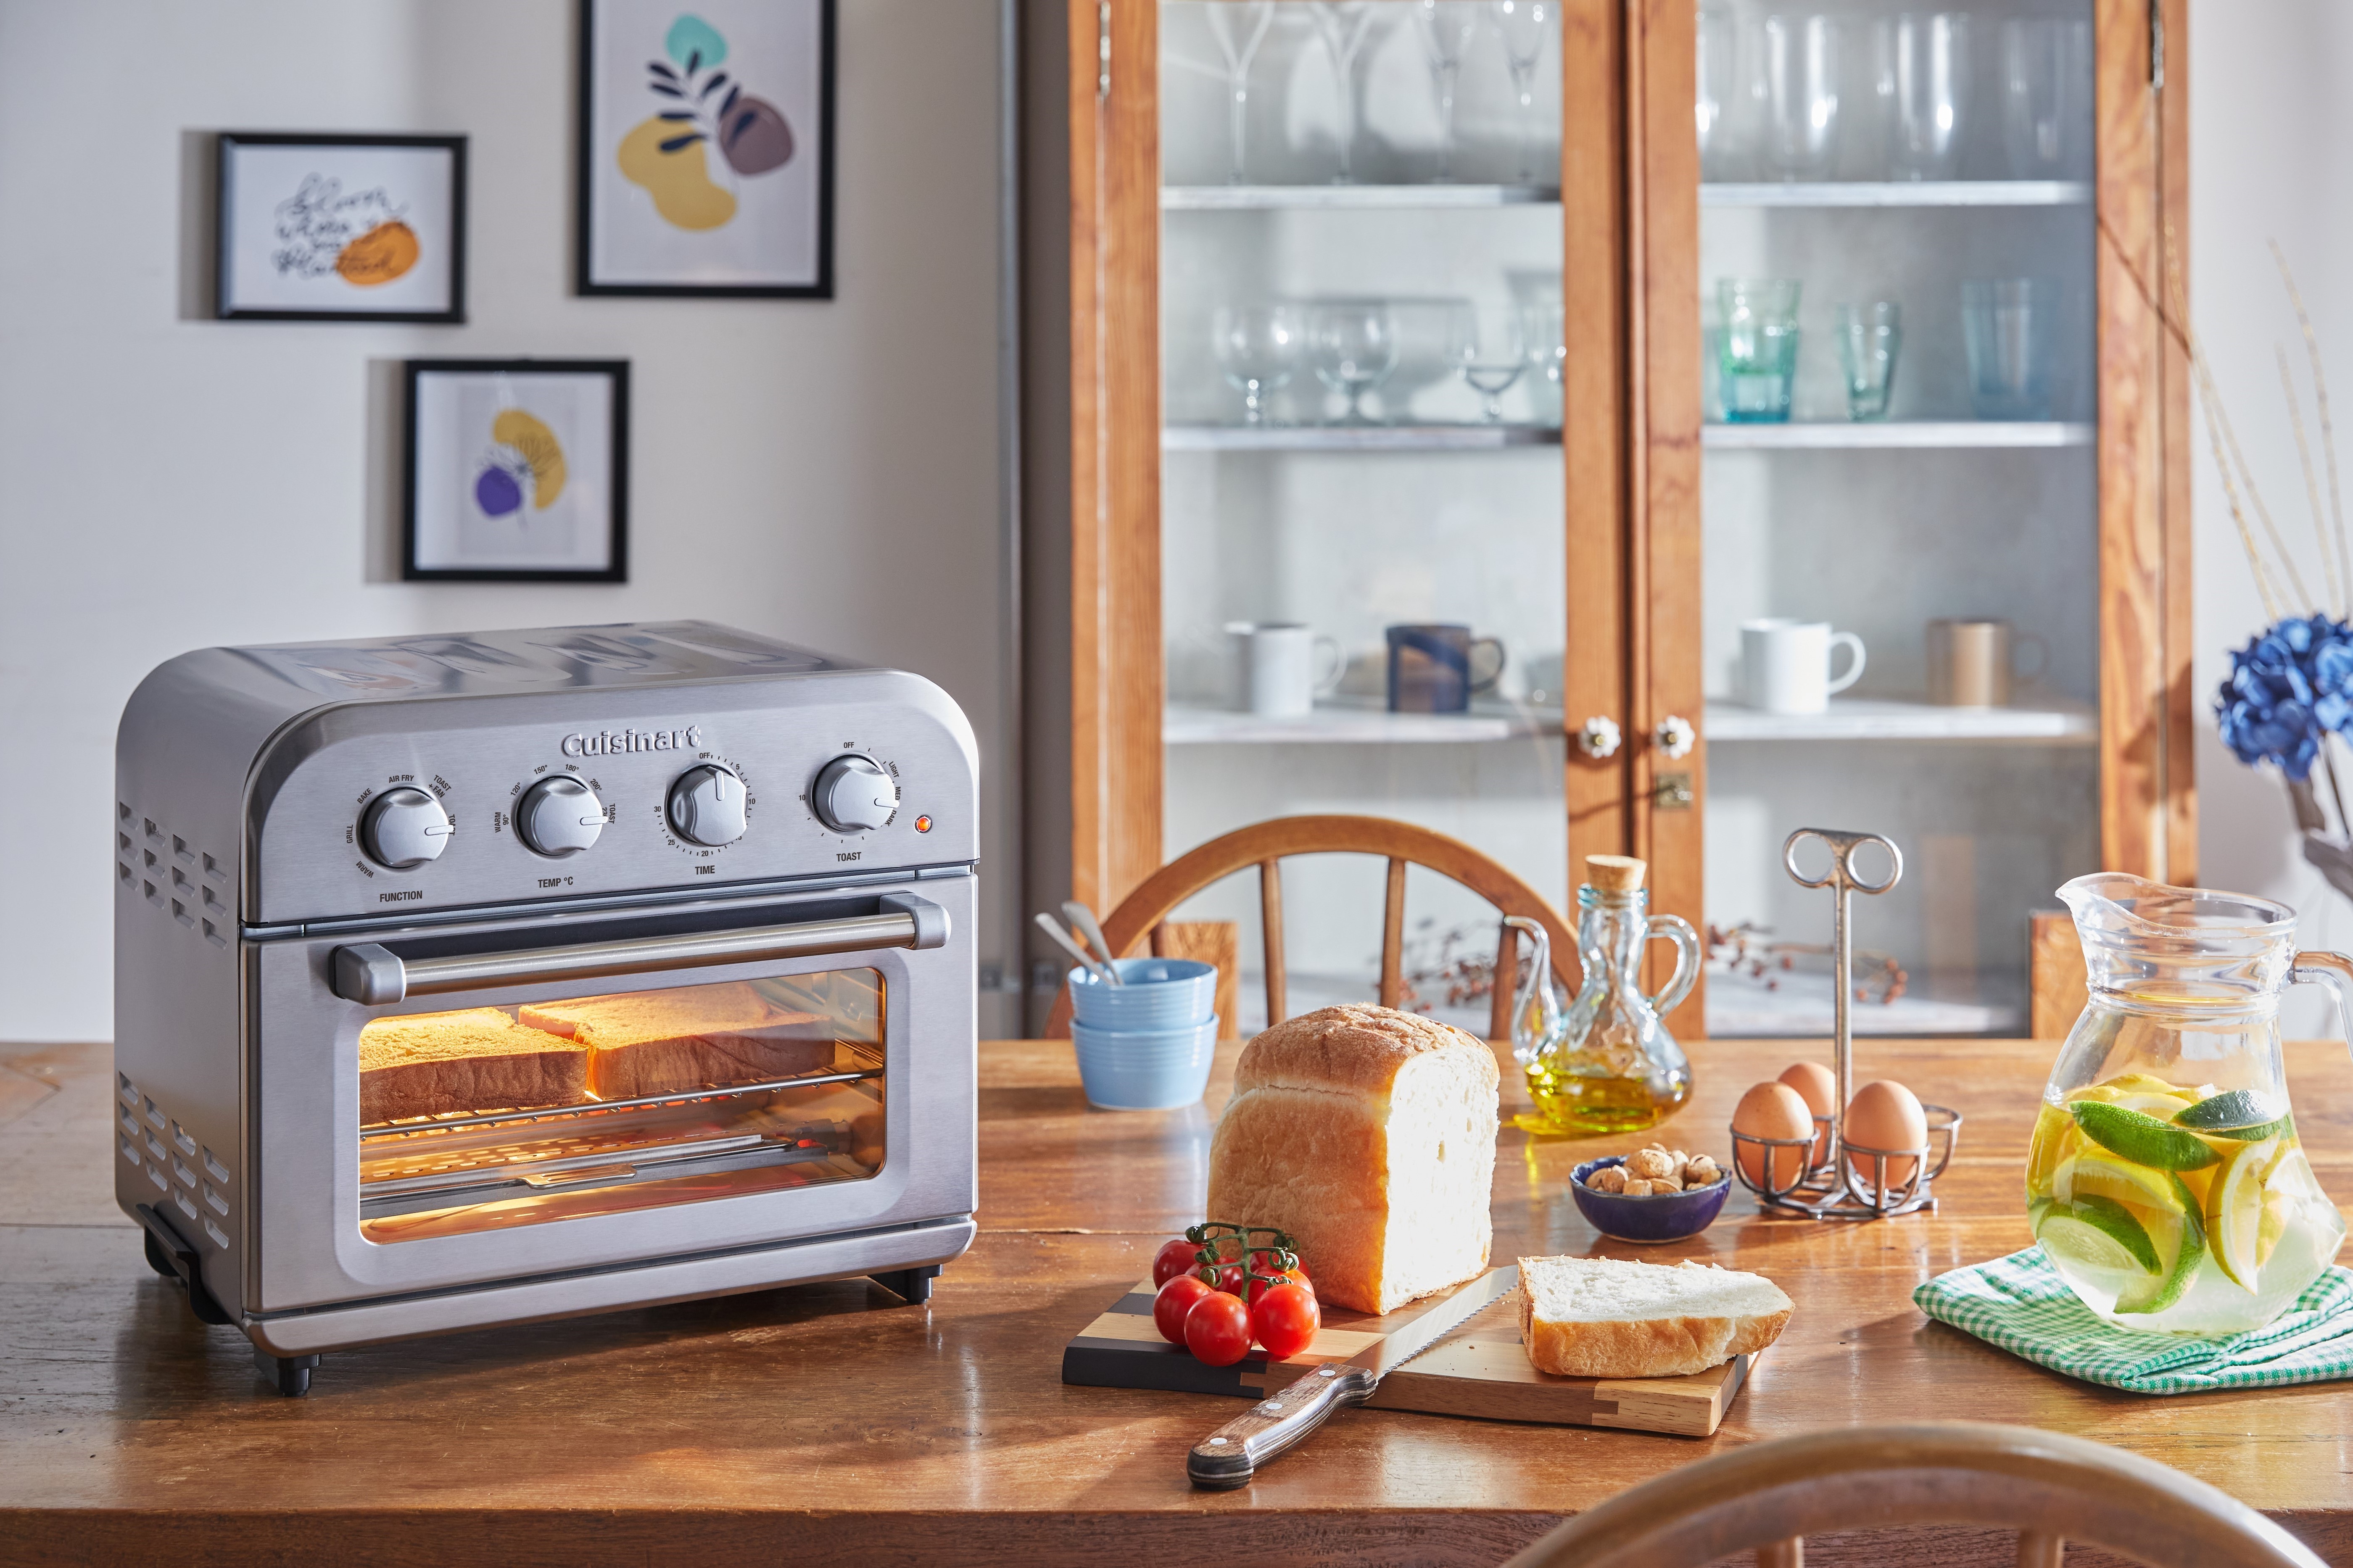 熱風調理で、毎日の料理も、特別な一皿も手軽に美味しく　
シリーズ上位モデル「エアフライ オーブントースター」発売　
使い勝手のよいグリルコンテナを付属、
パンによって選べる4種類のトースト機能